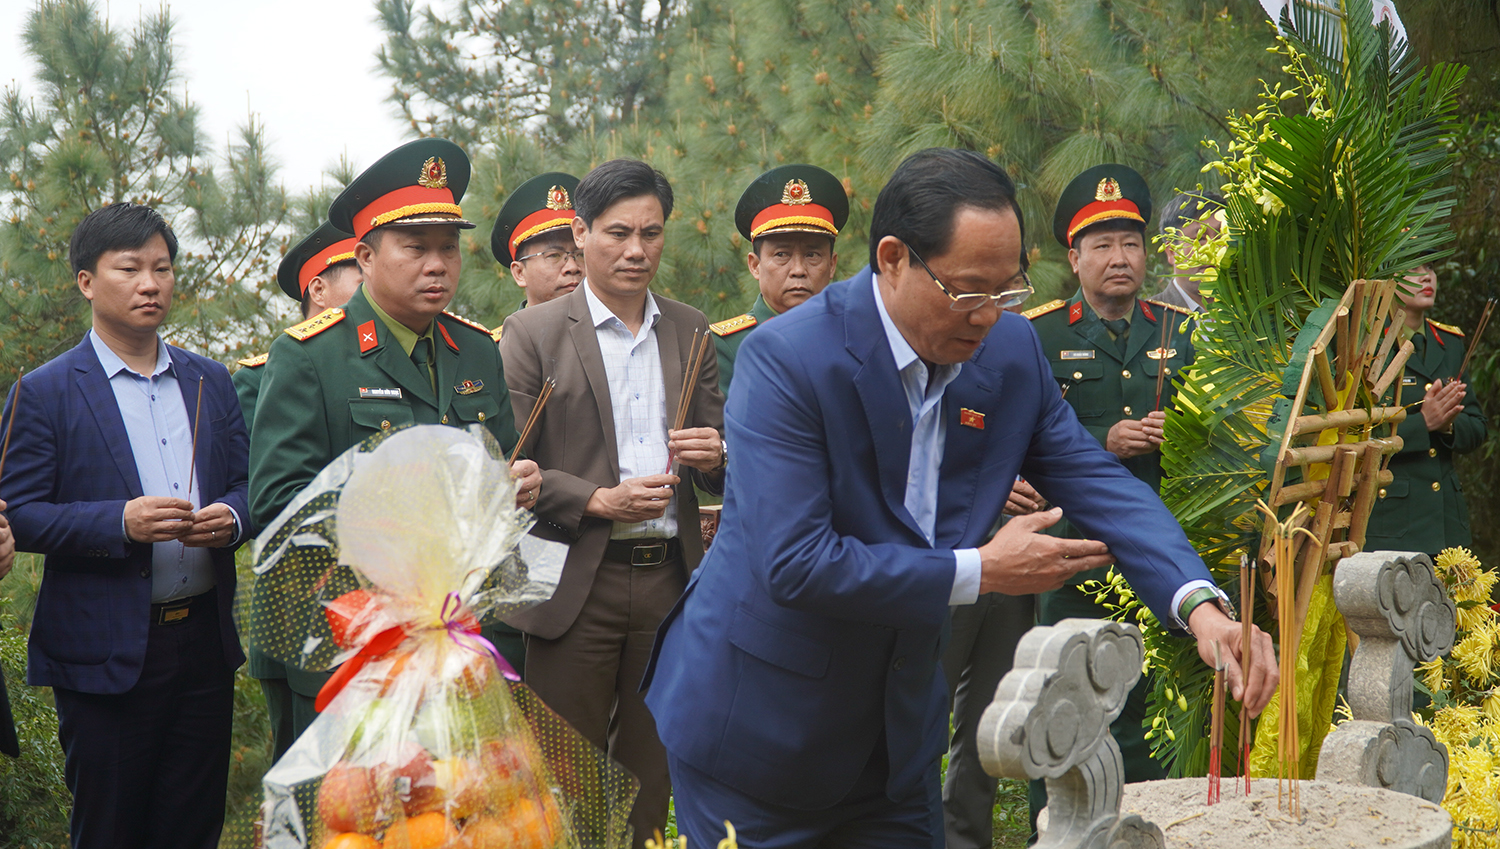 Đồng chí Thượng tướng, Phó Chủ tịch Quốc hội Trần Quang Phương  và các đại biểu dâng hương viếng Đại tướng Võ Nguyên Giáp